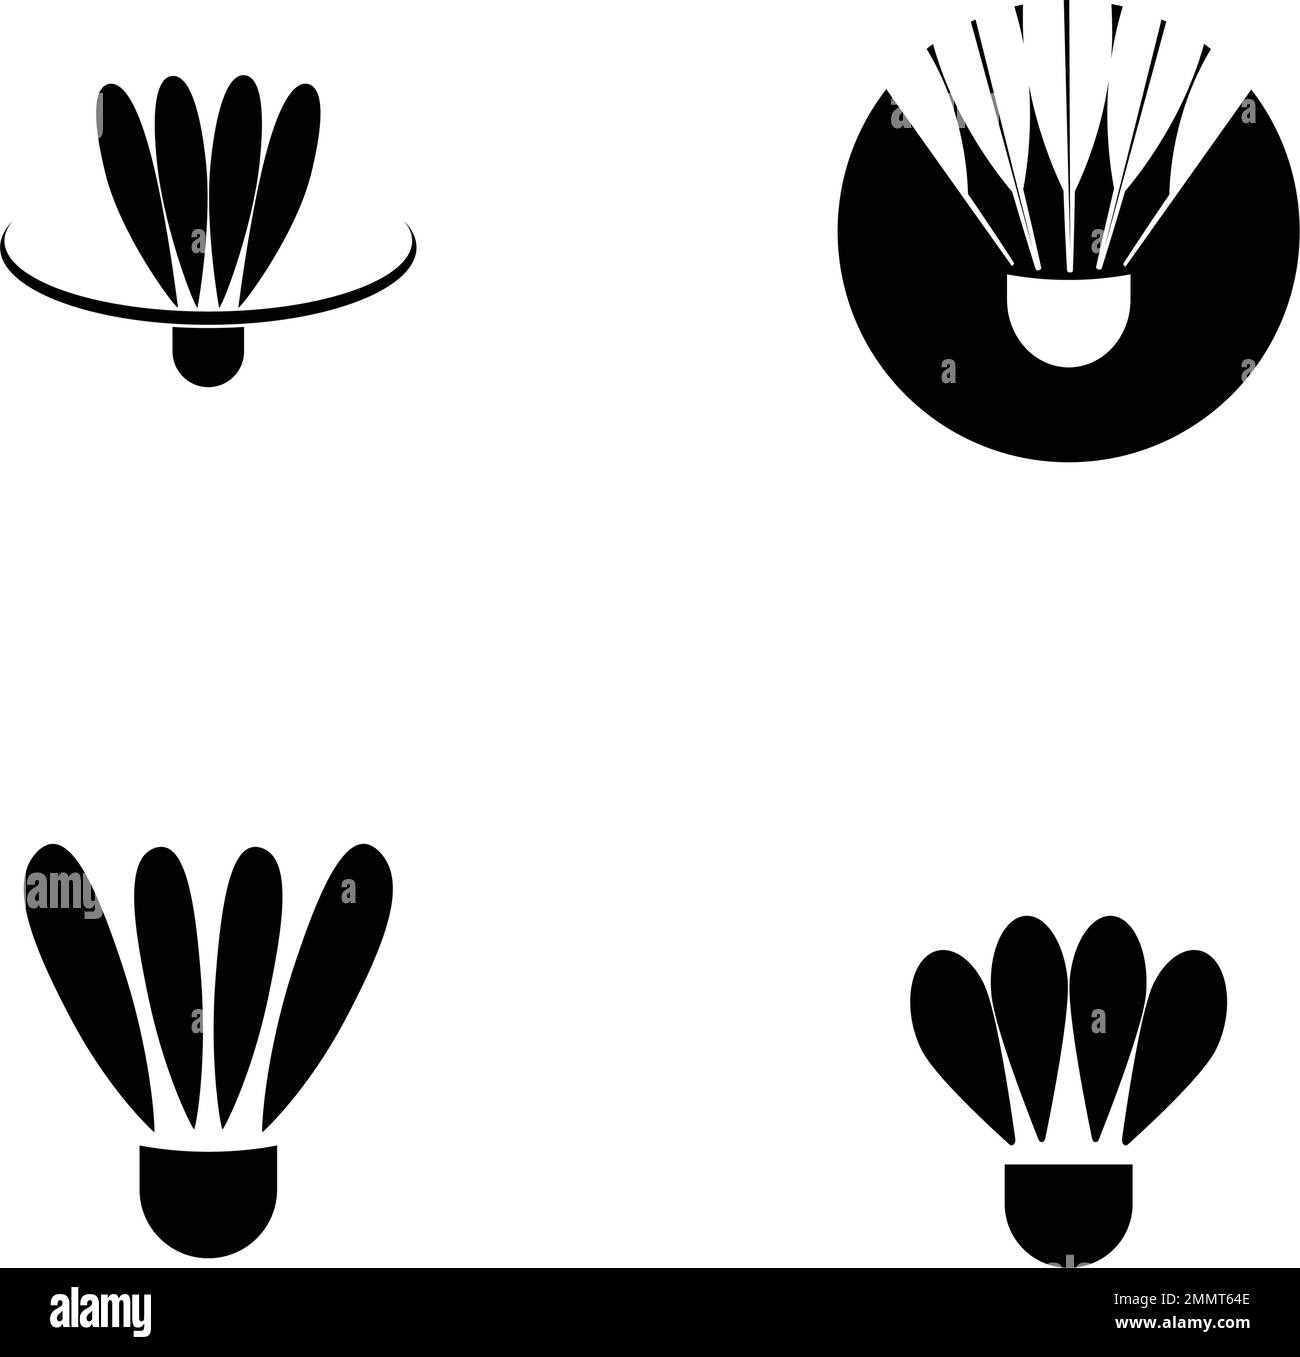 Vektor-Grafikdesign mit Badminton-Logo Stock Vektor